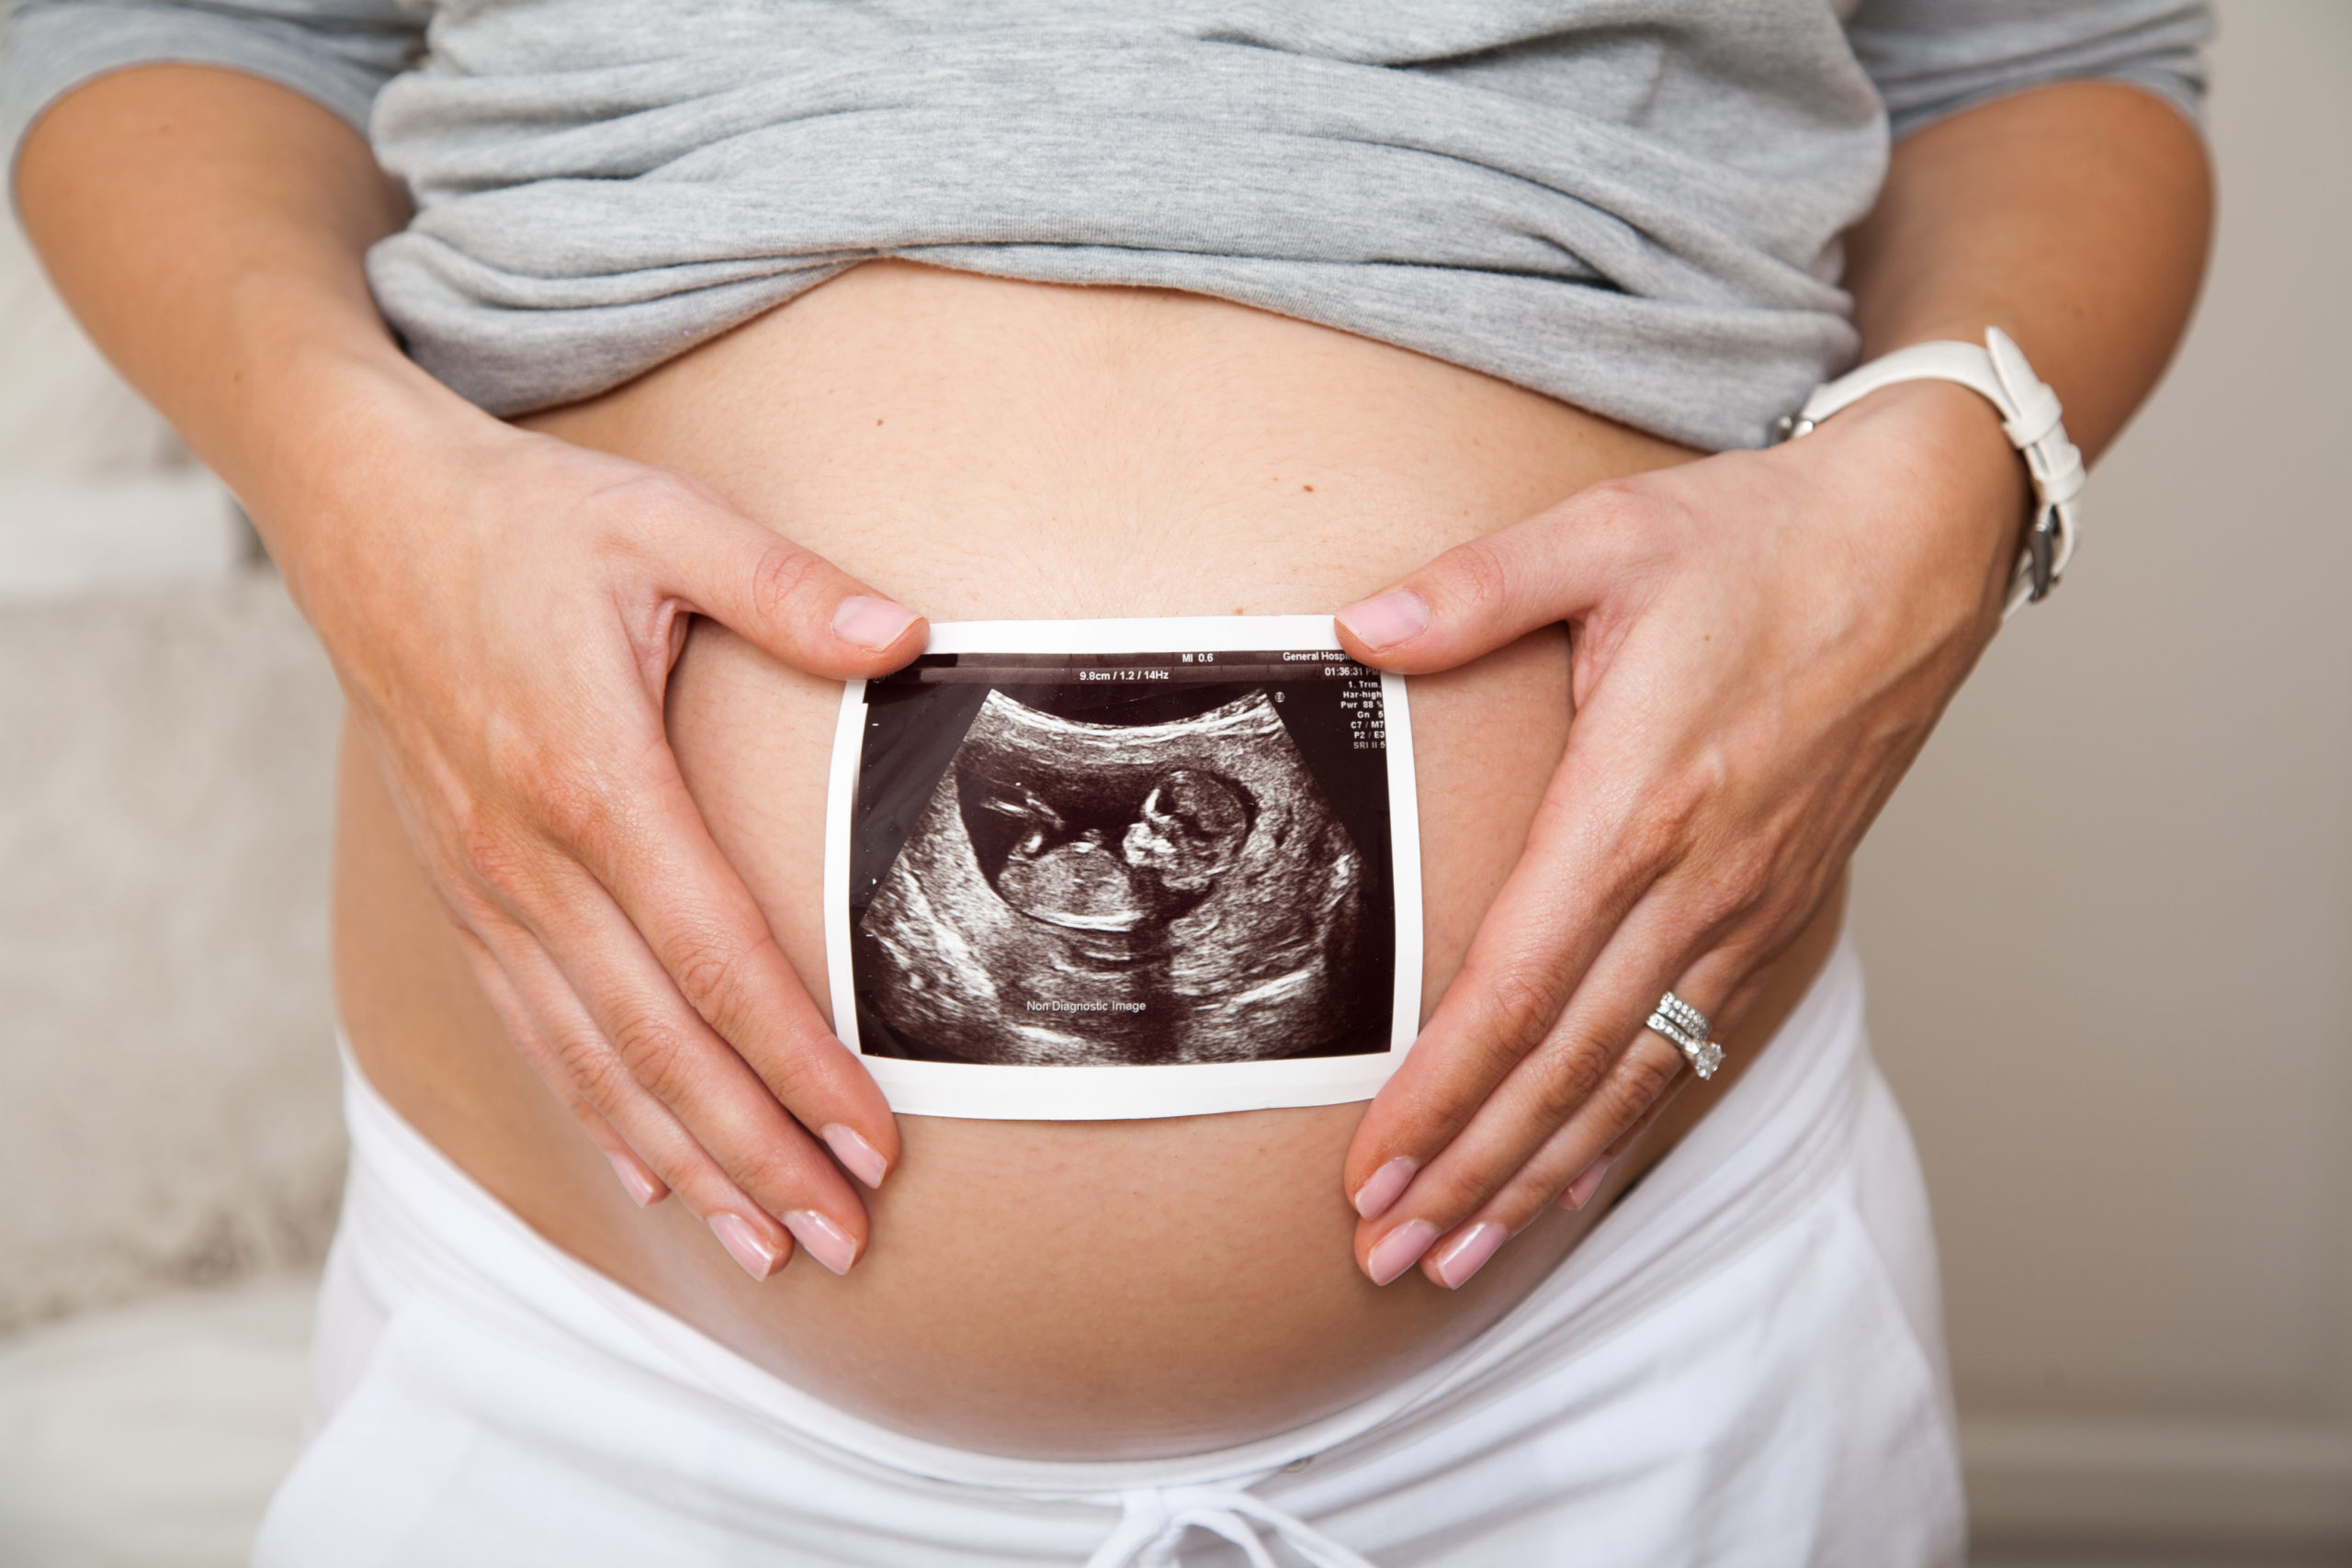 Mujer embarazada sujeta una ecografía